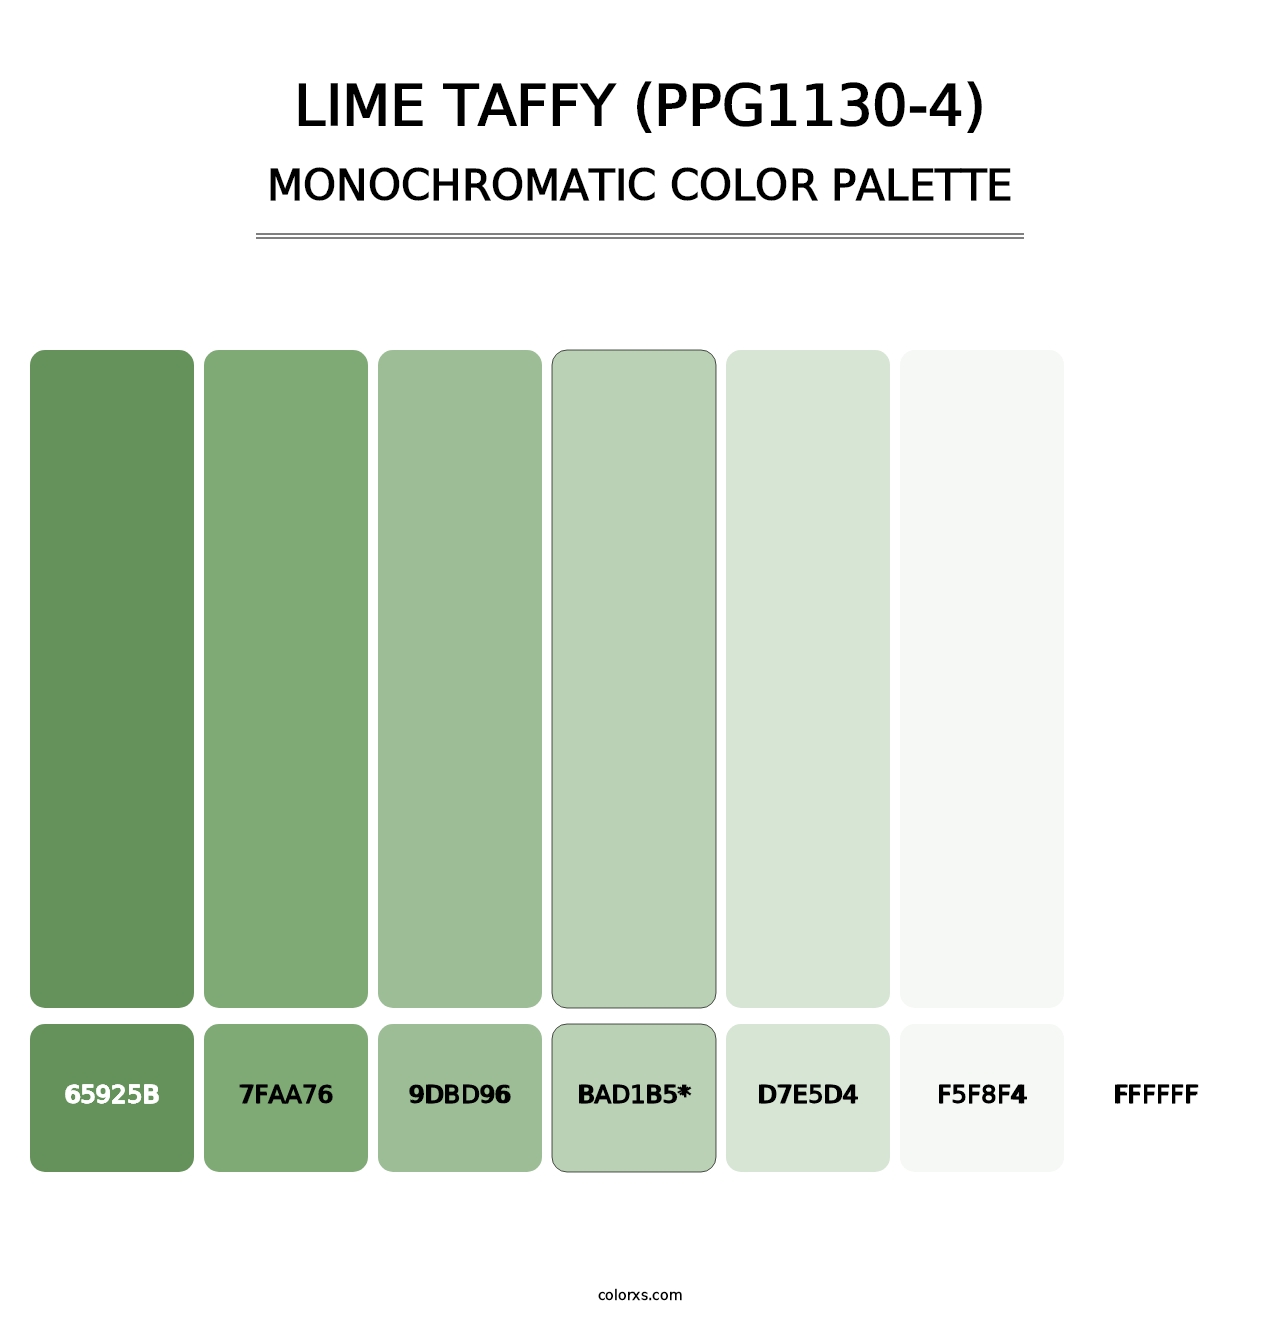 Lime Taffy (PPG1130-4) - Monochromatic Color Palette